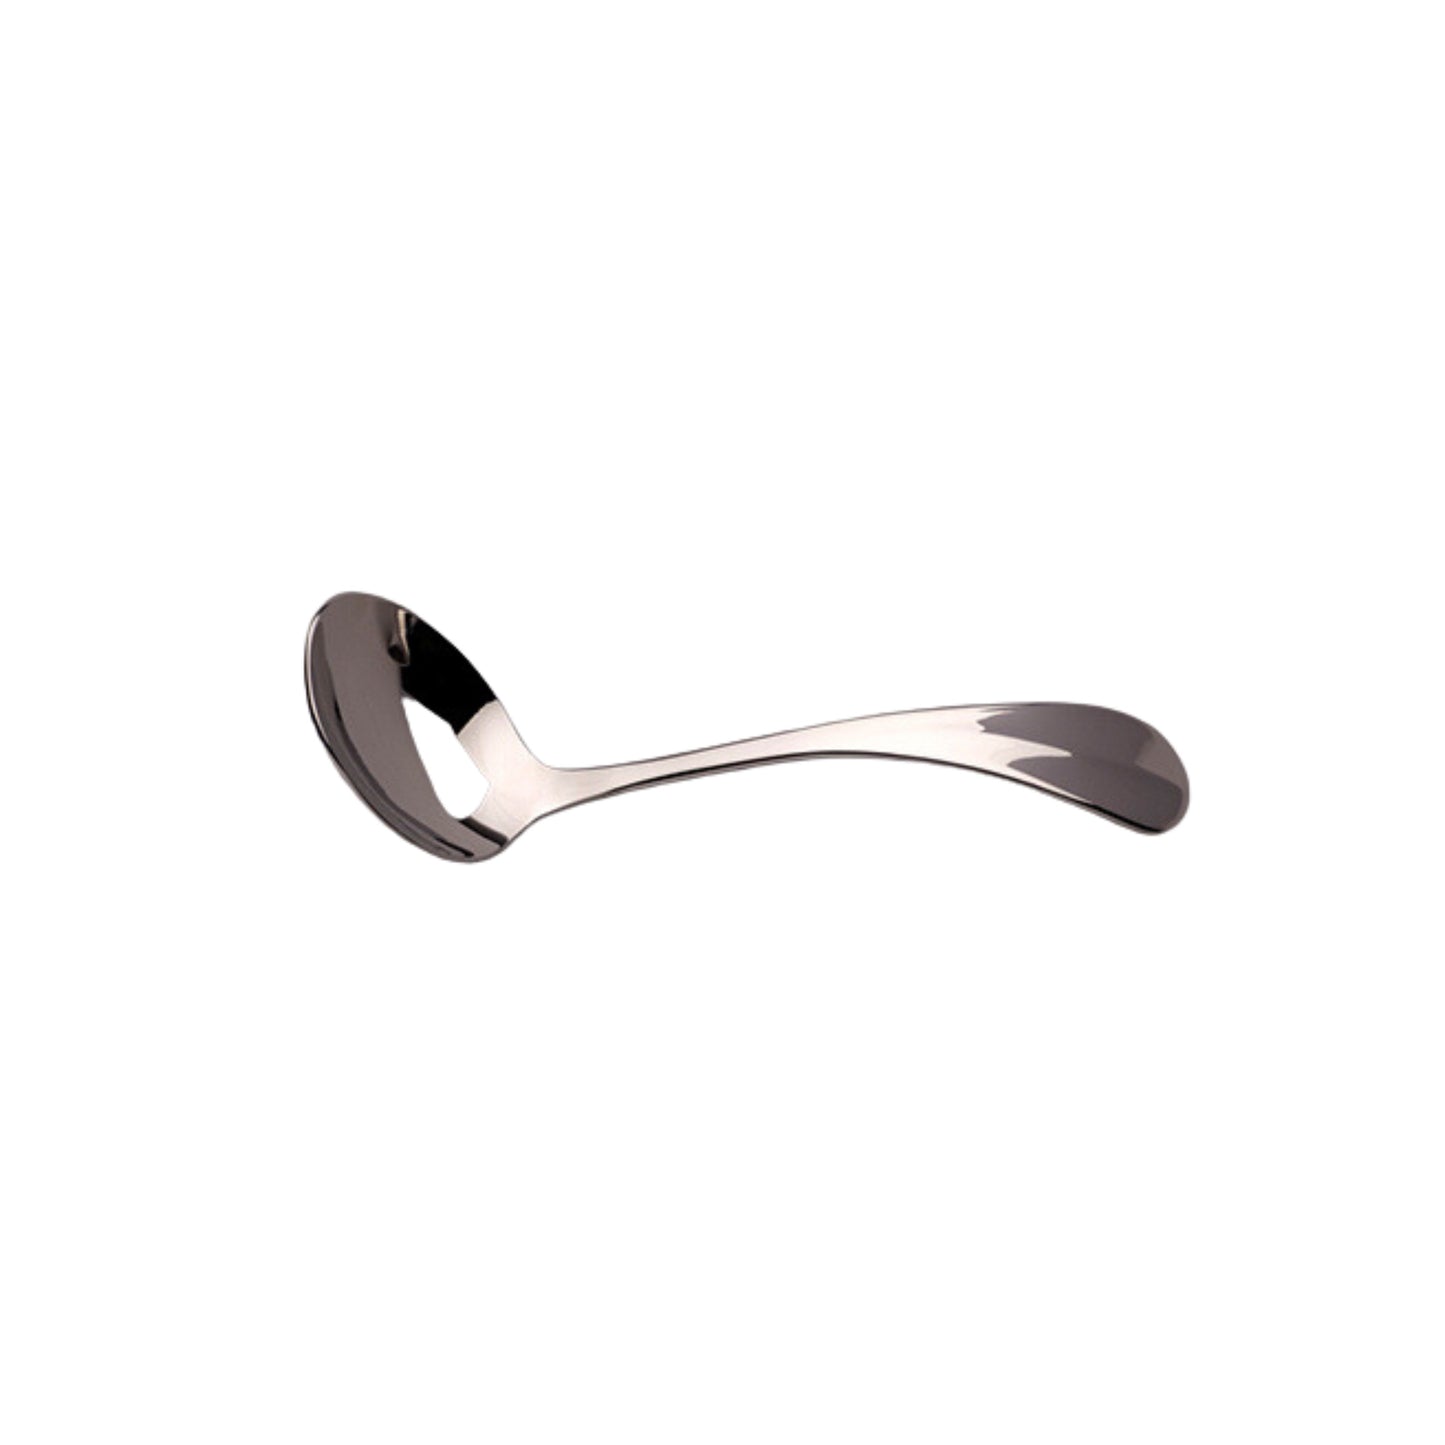 Dubarry stainless steel flatware cutlery